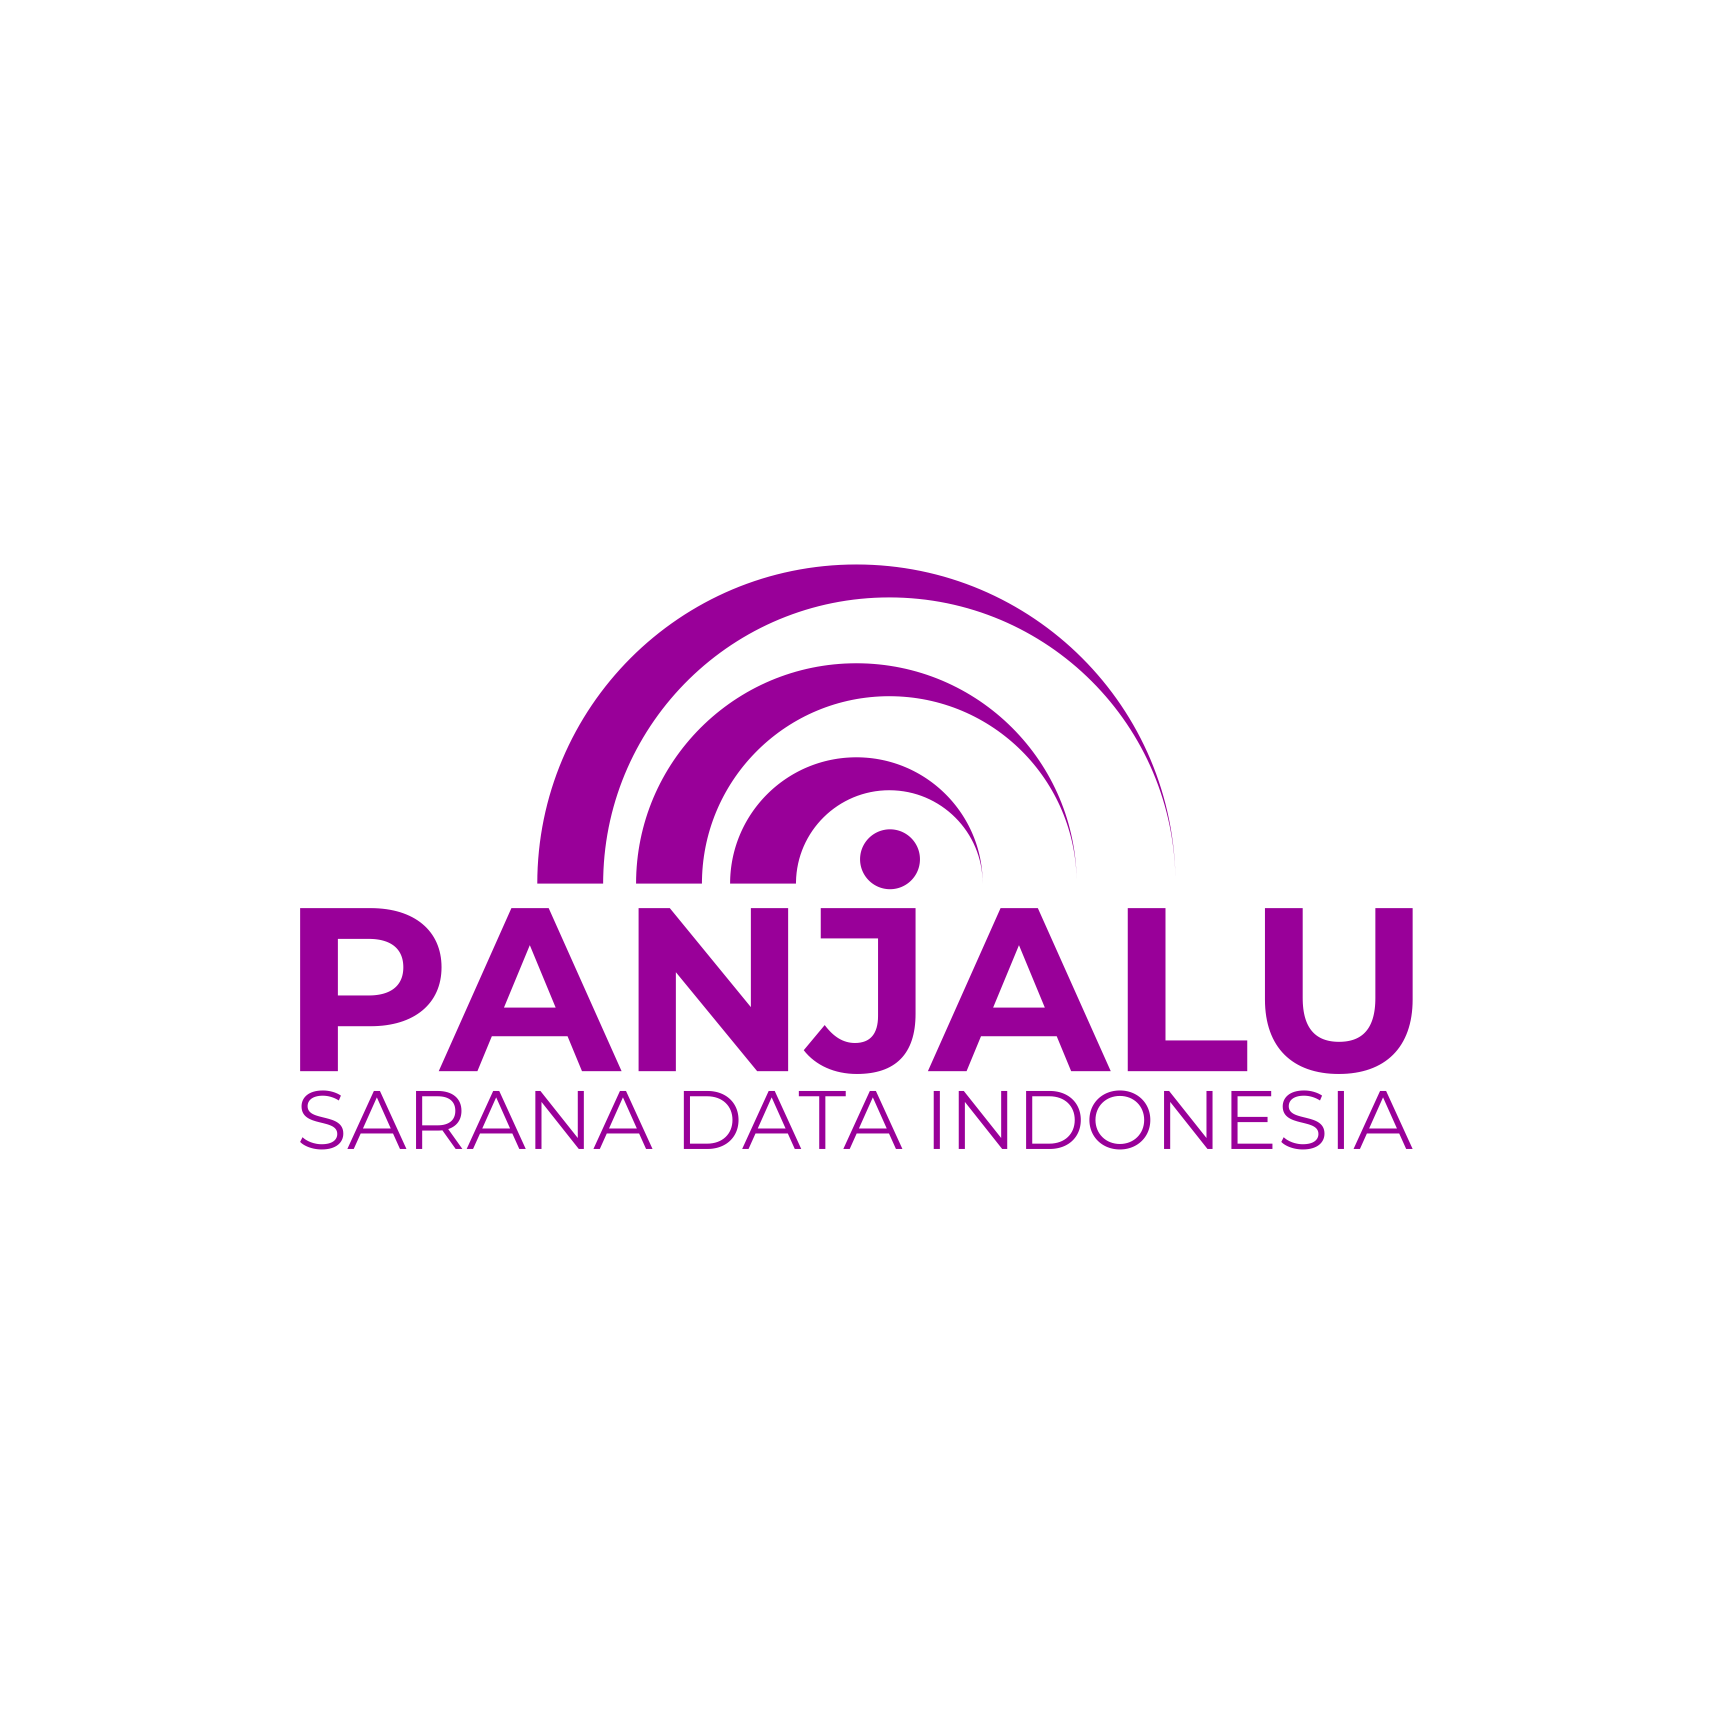 PT. PANJALU SARANA DATA INDONESIA